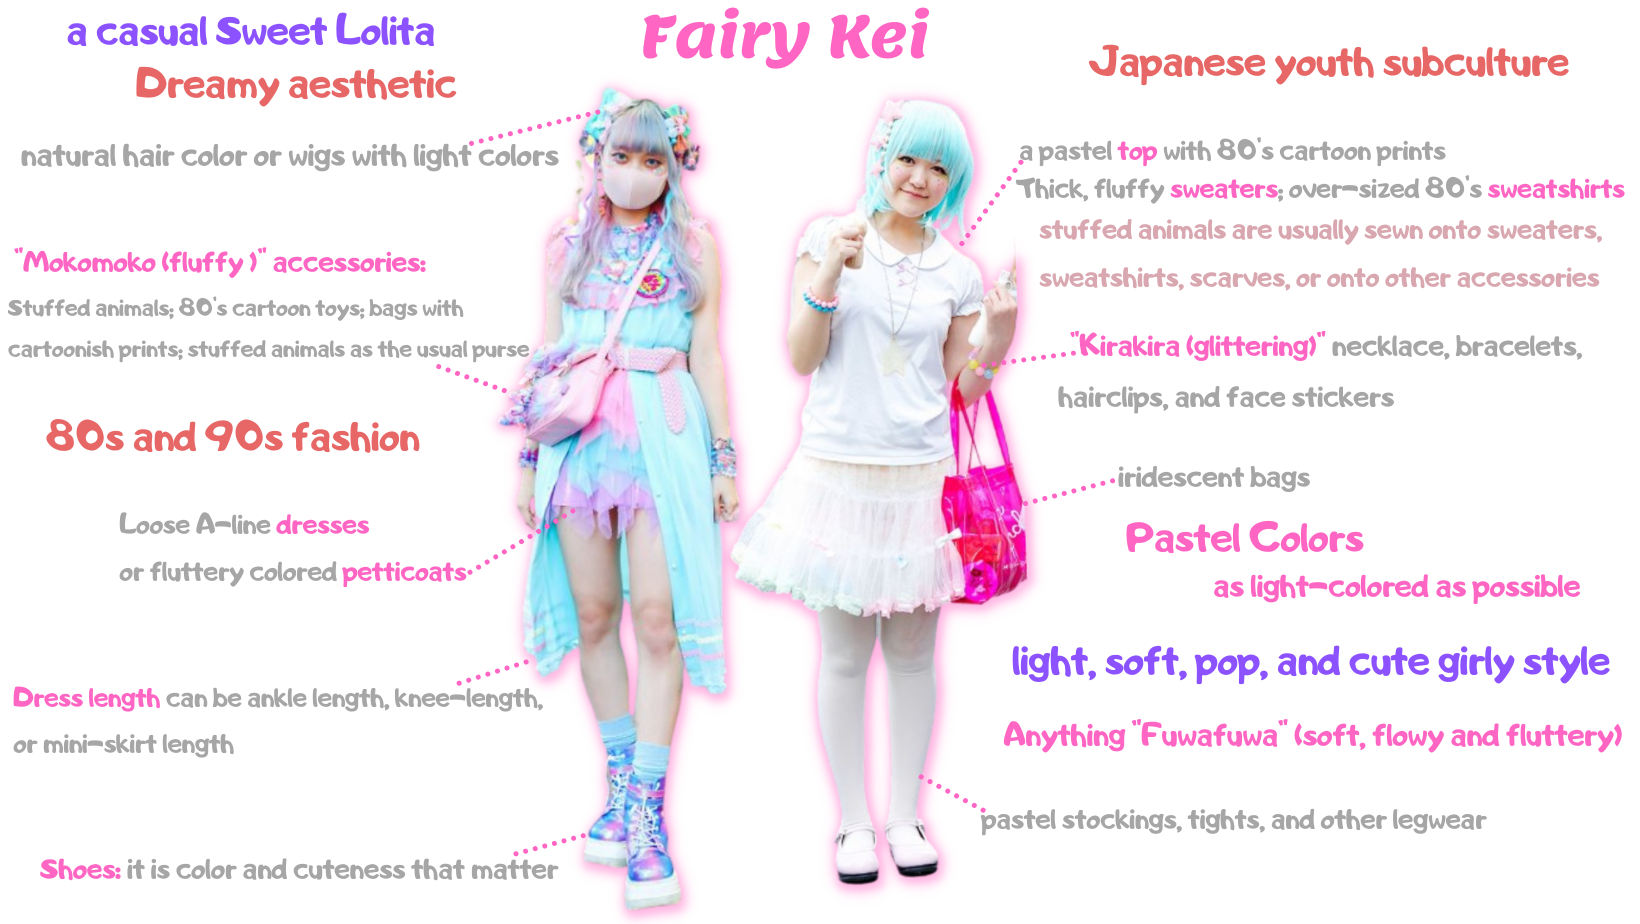 fairy kei clothing